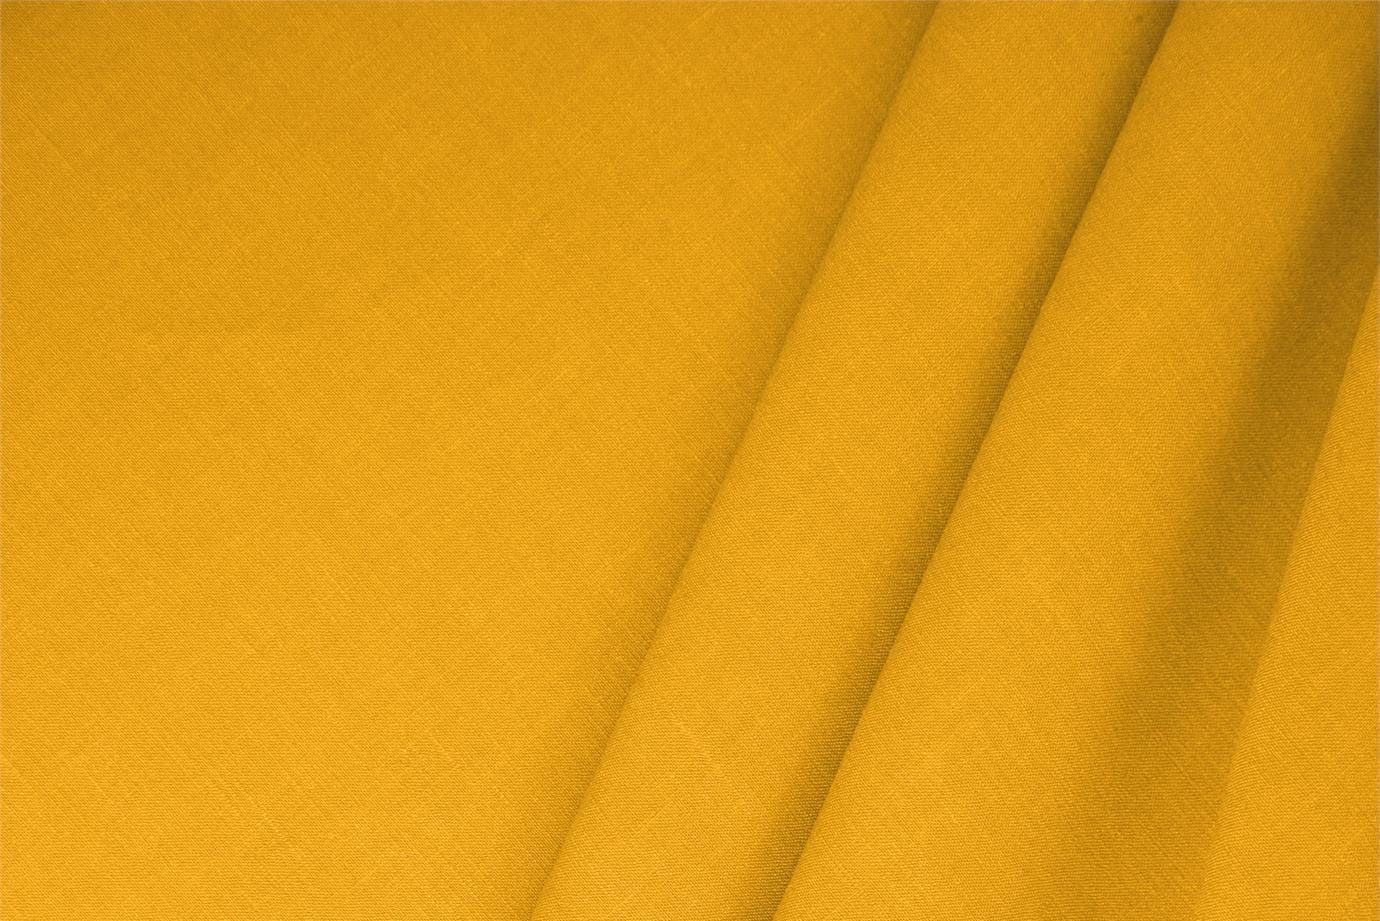 Sunflower Yellow Linen, Stretch, Viscose Linen Blend fabric for dressmaking